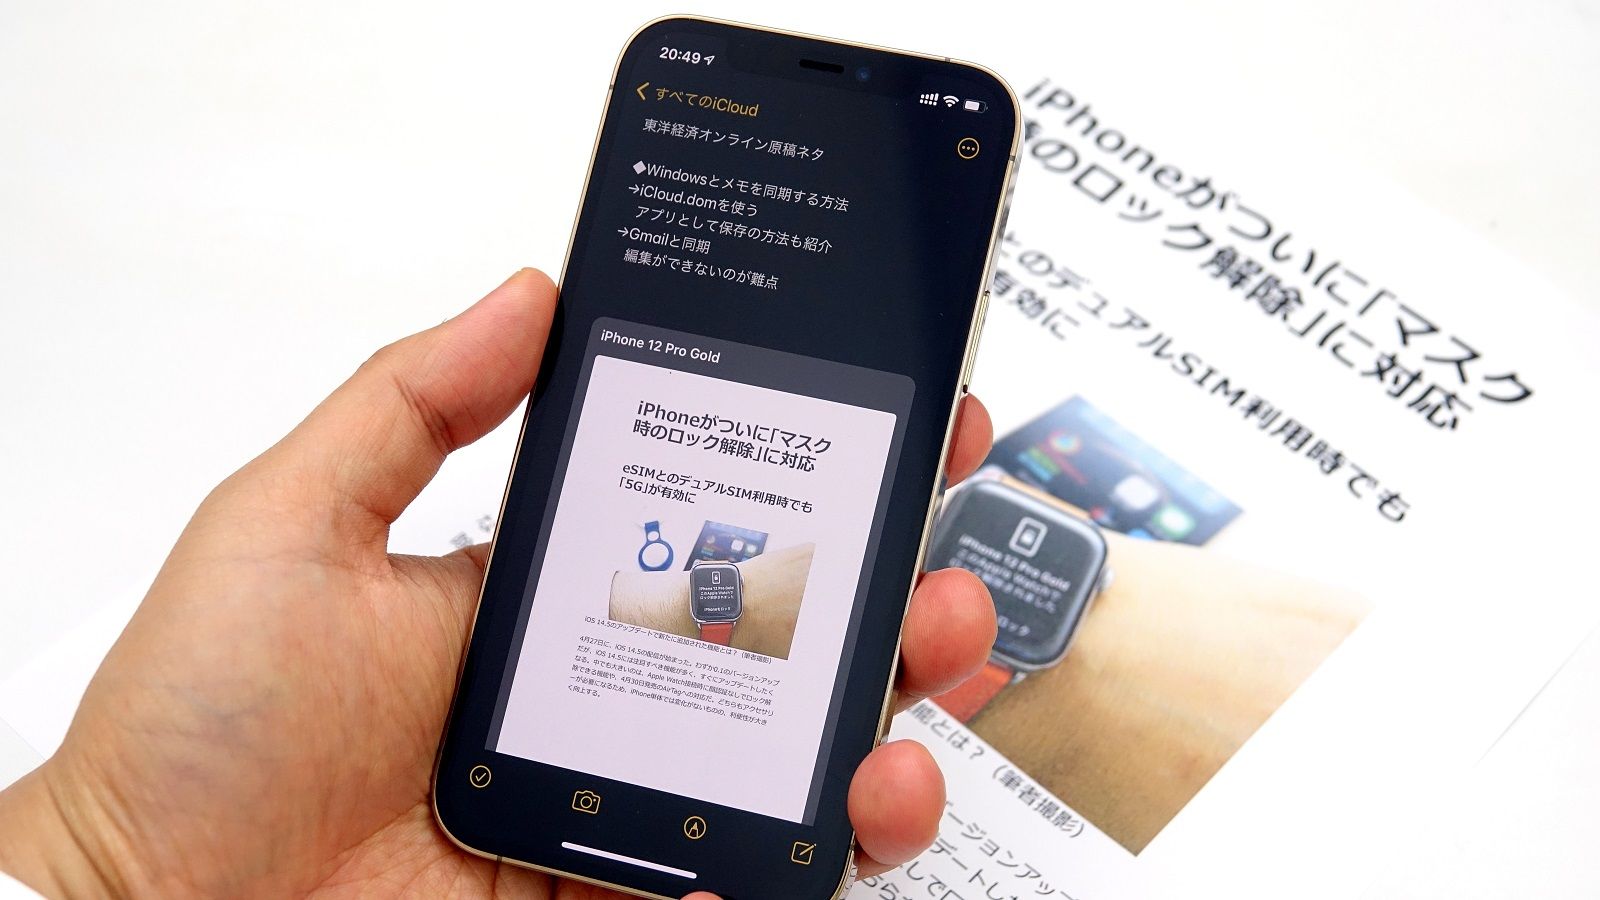 Iphoneの スキャン機能 はとてつもなく便利だ Iphoneの裏技 東洋経済オンライン 経済ニュースの新基準